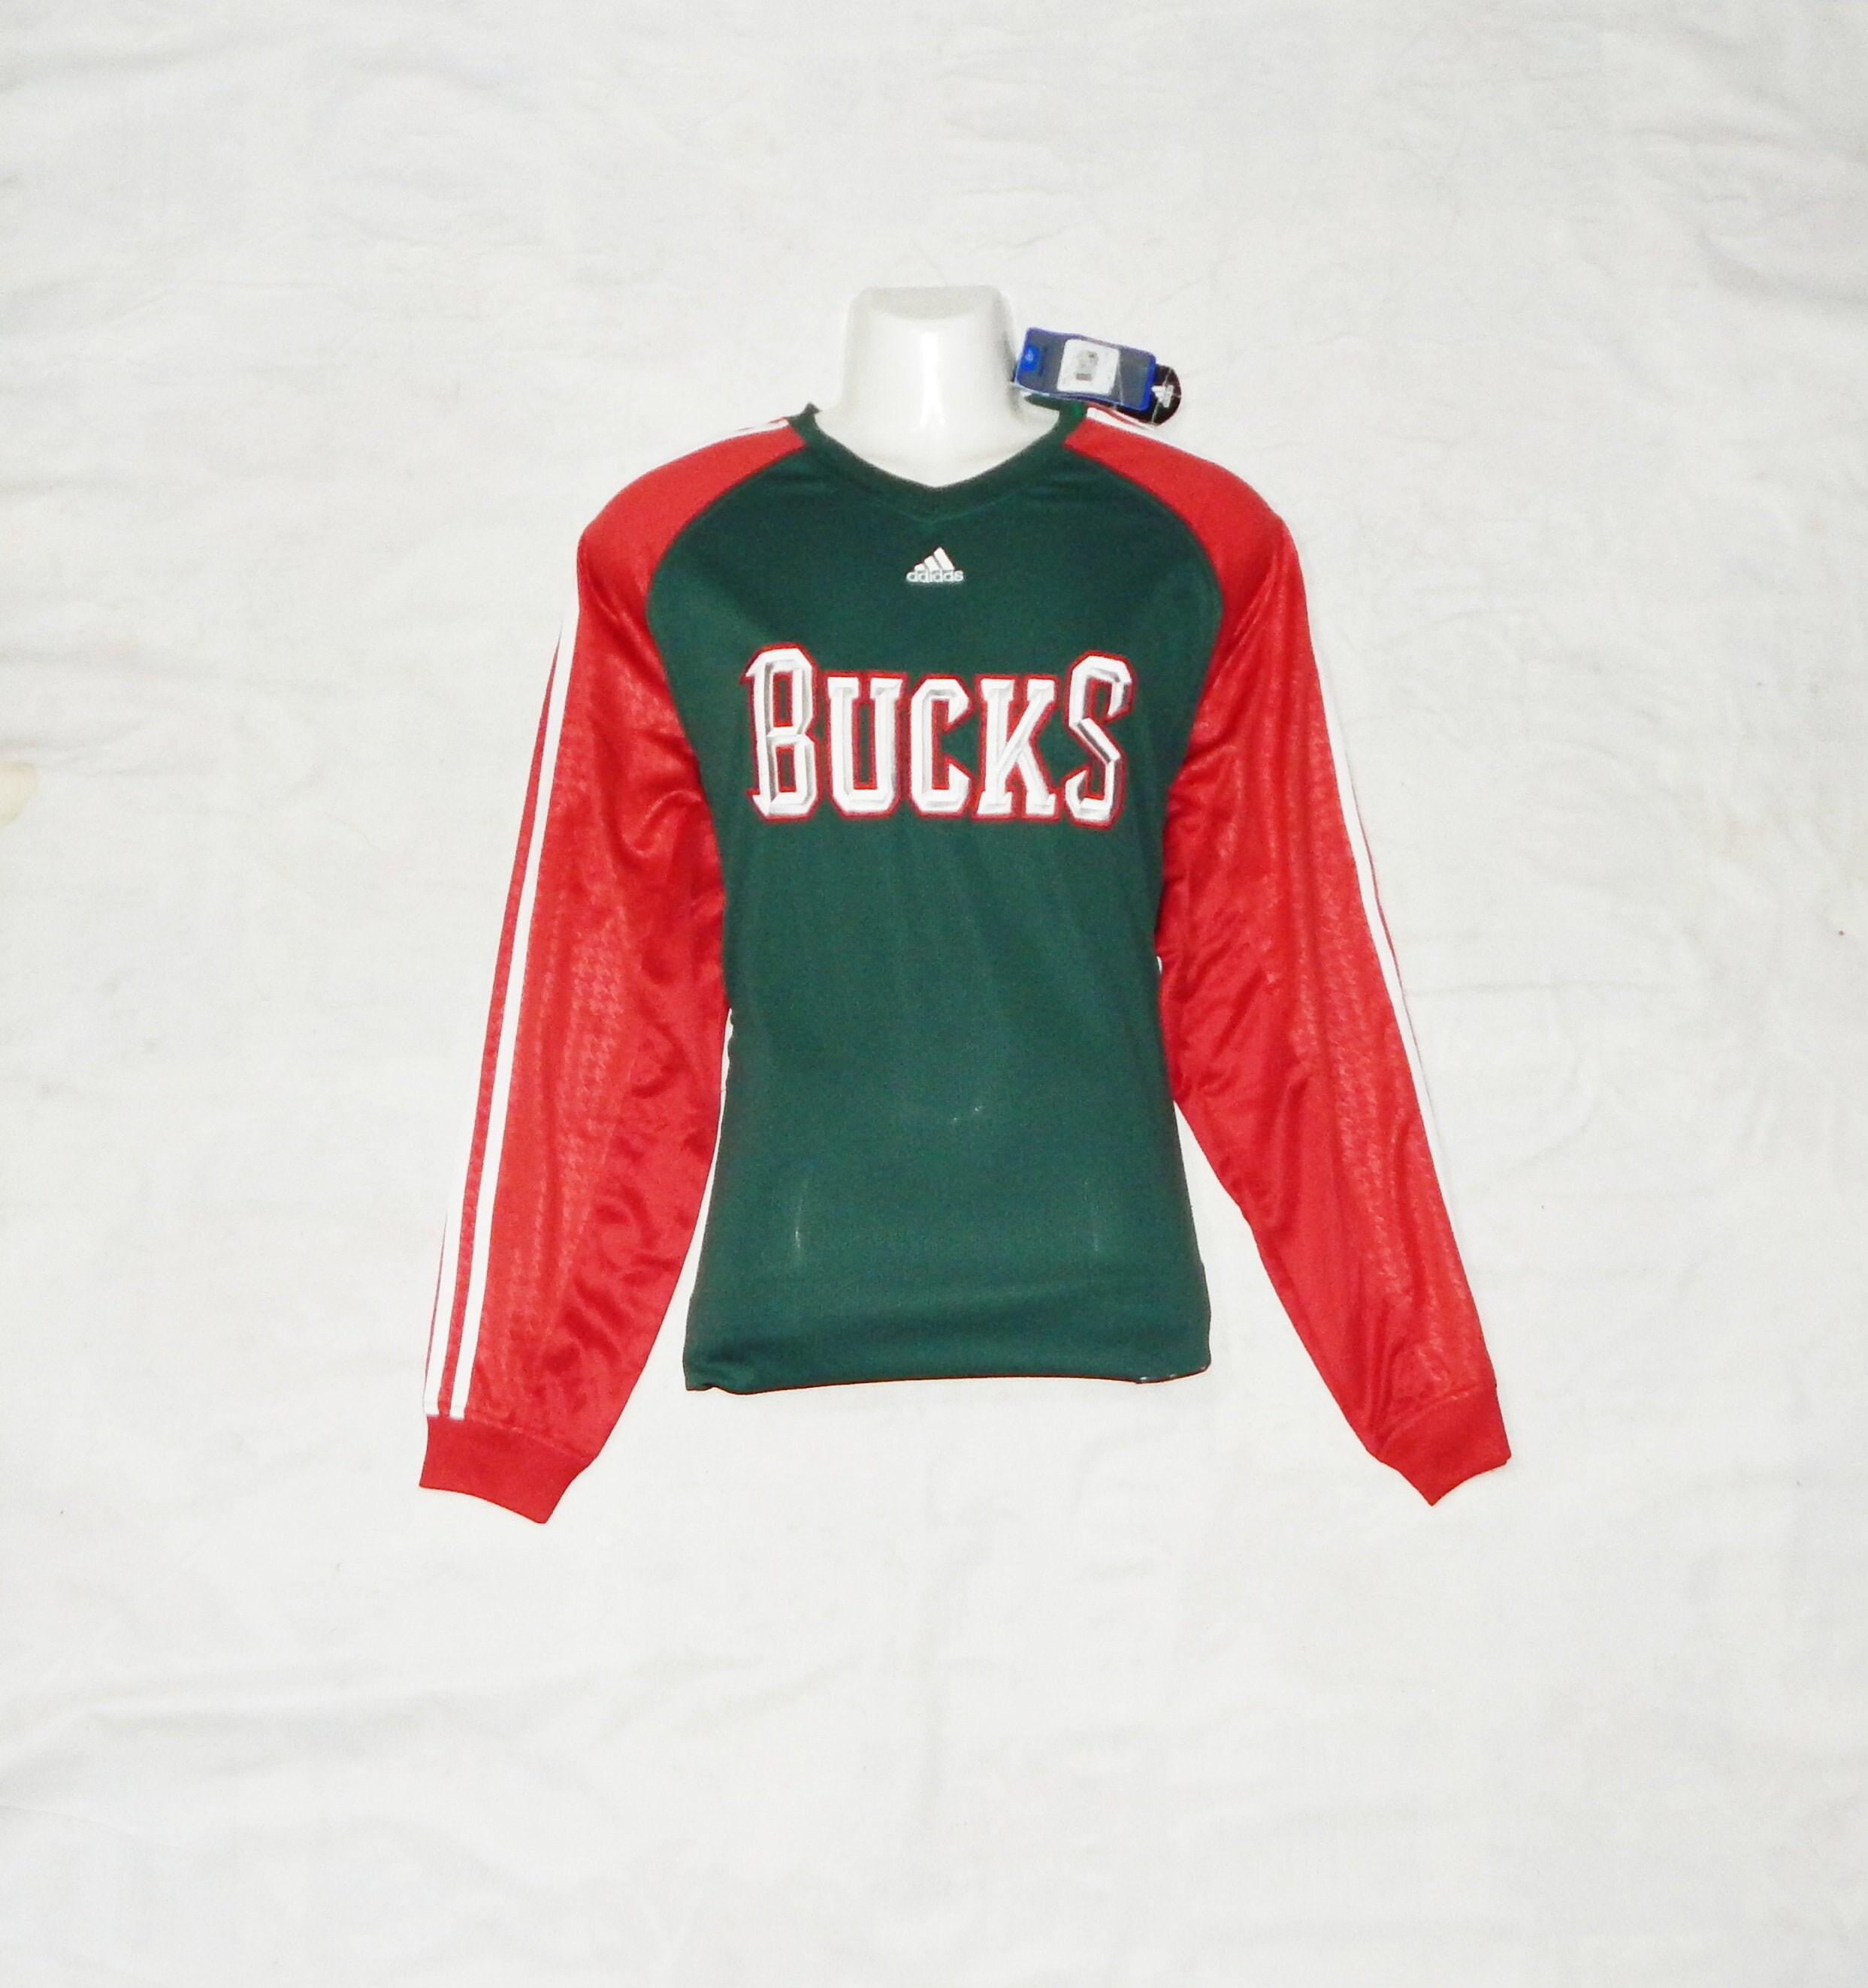  Milwaukee Bucks Jabari Parker adidas Green Swingman Road Jersey  (S) : Sports & Outdoors